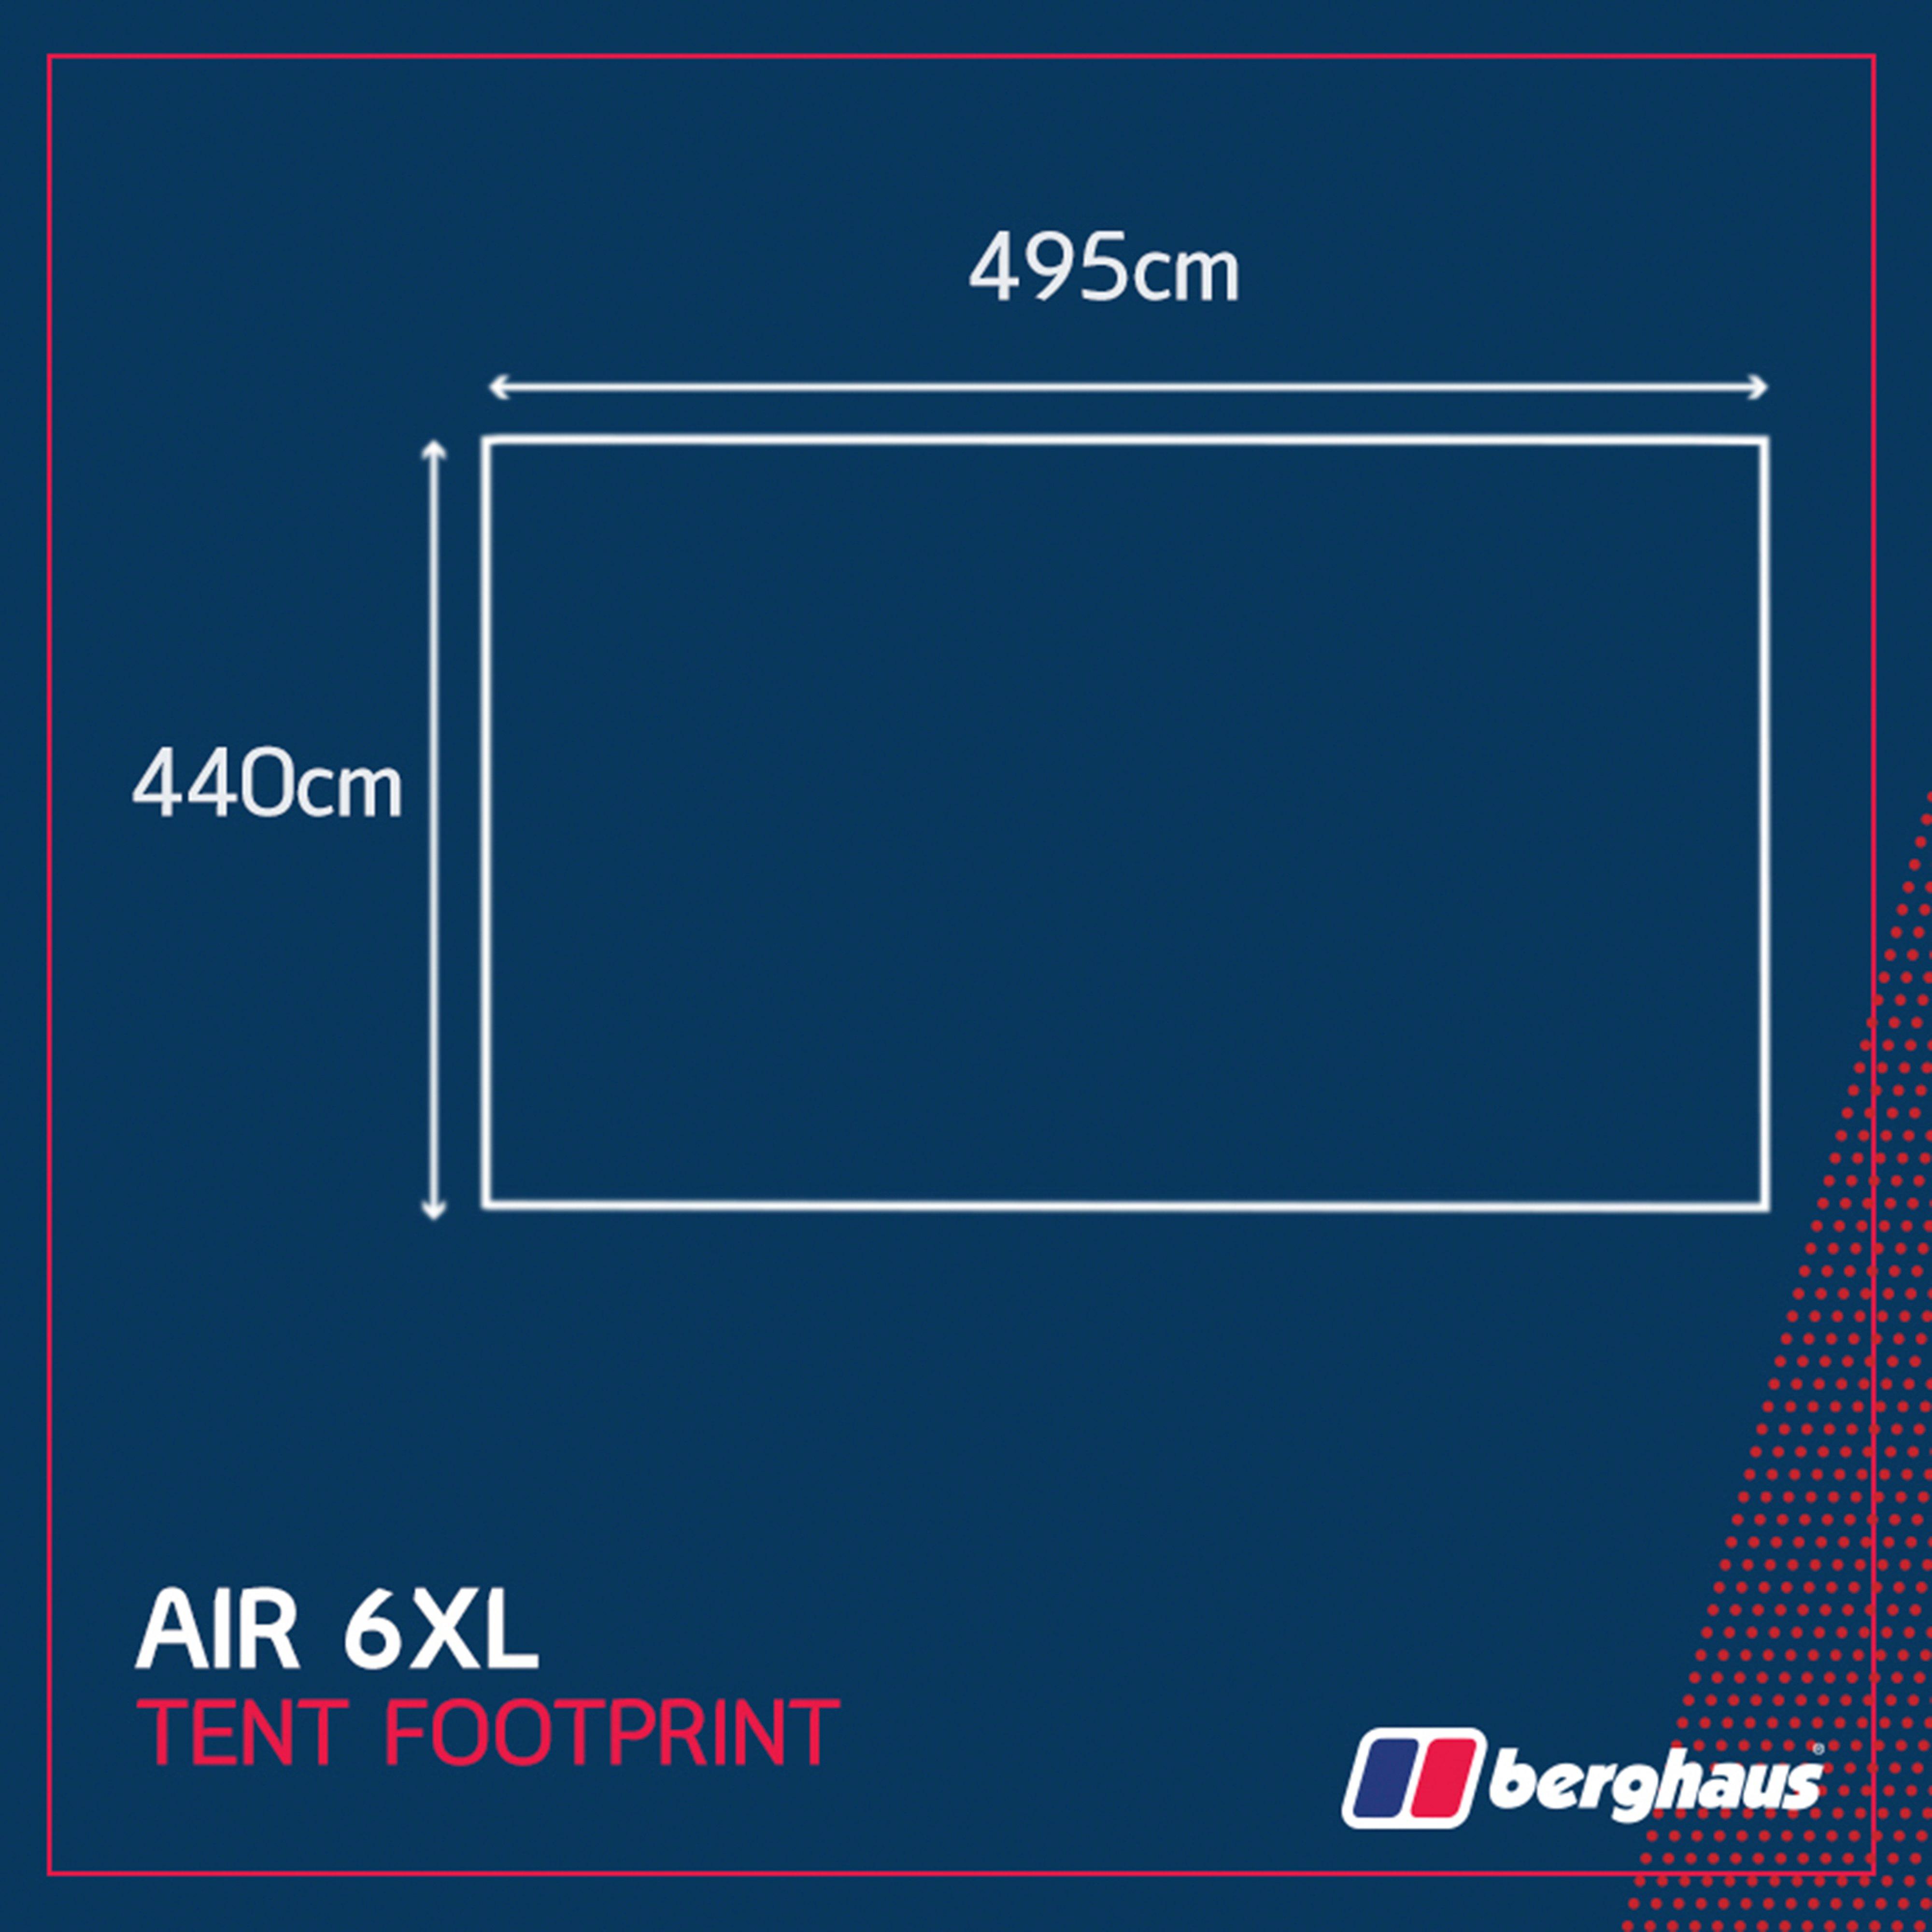 Berghaus Air 6 XL Tent Footprint